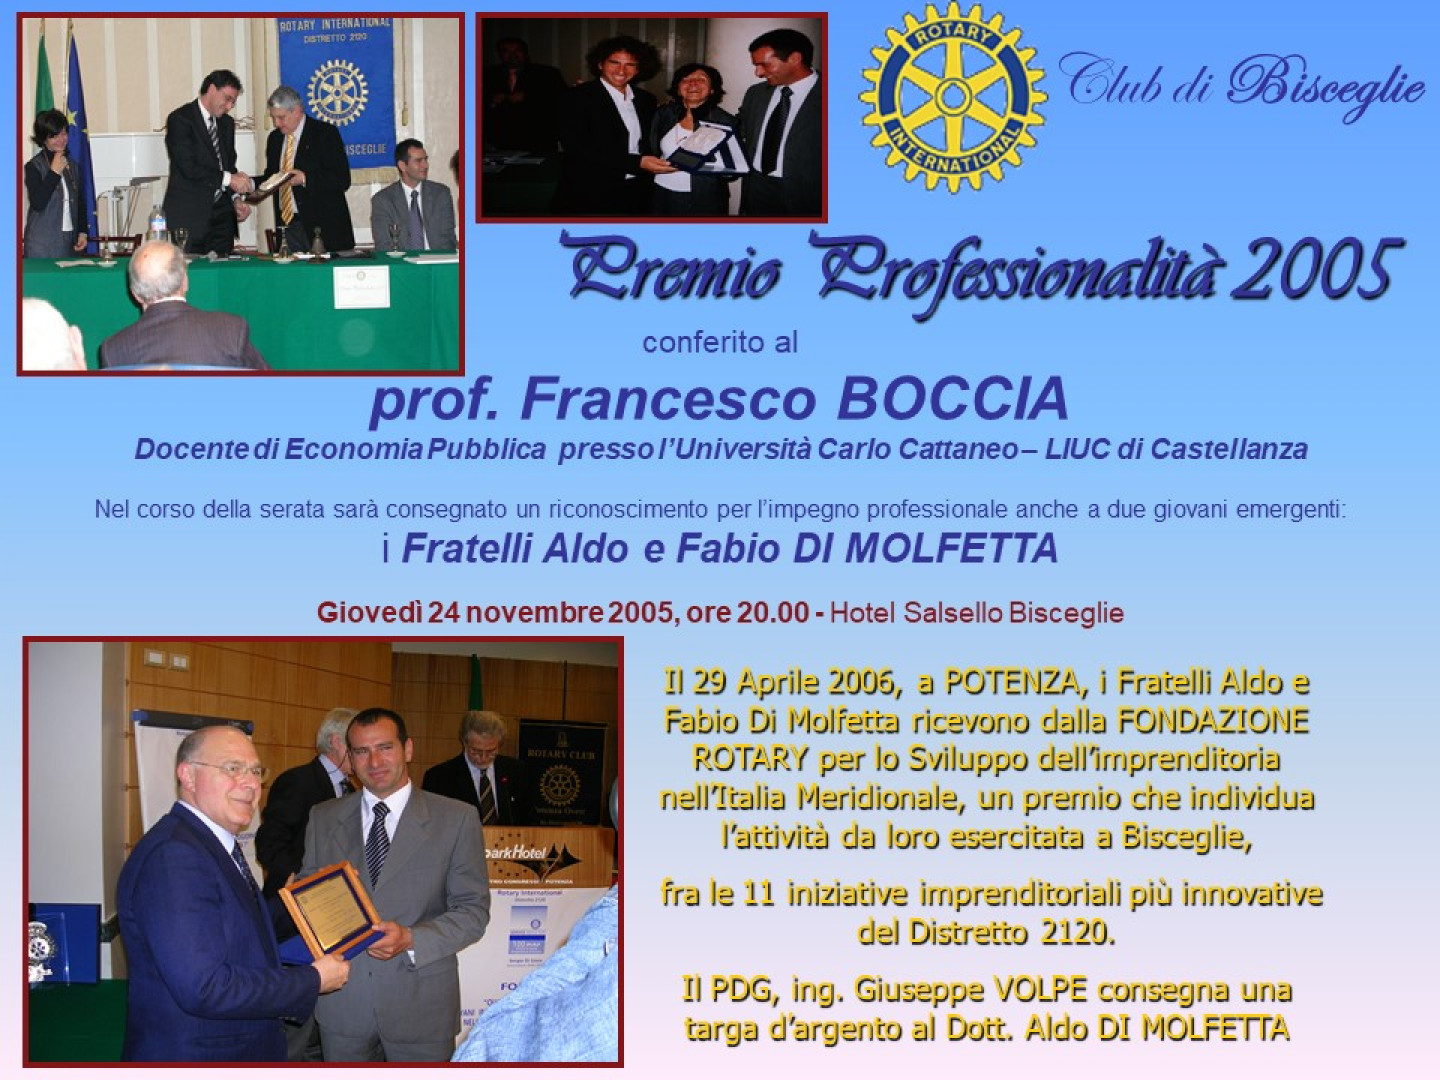 Il Premio Professionalità 2005 al Rotary Club di Bisceglie